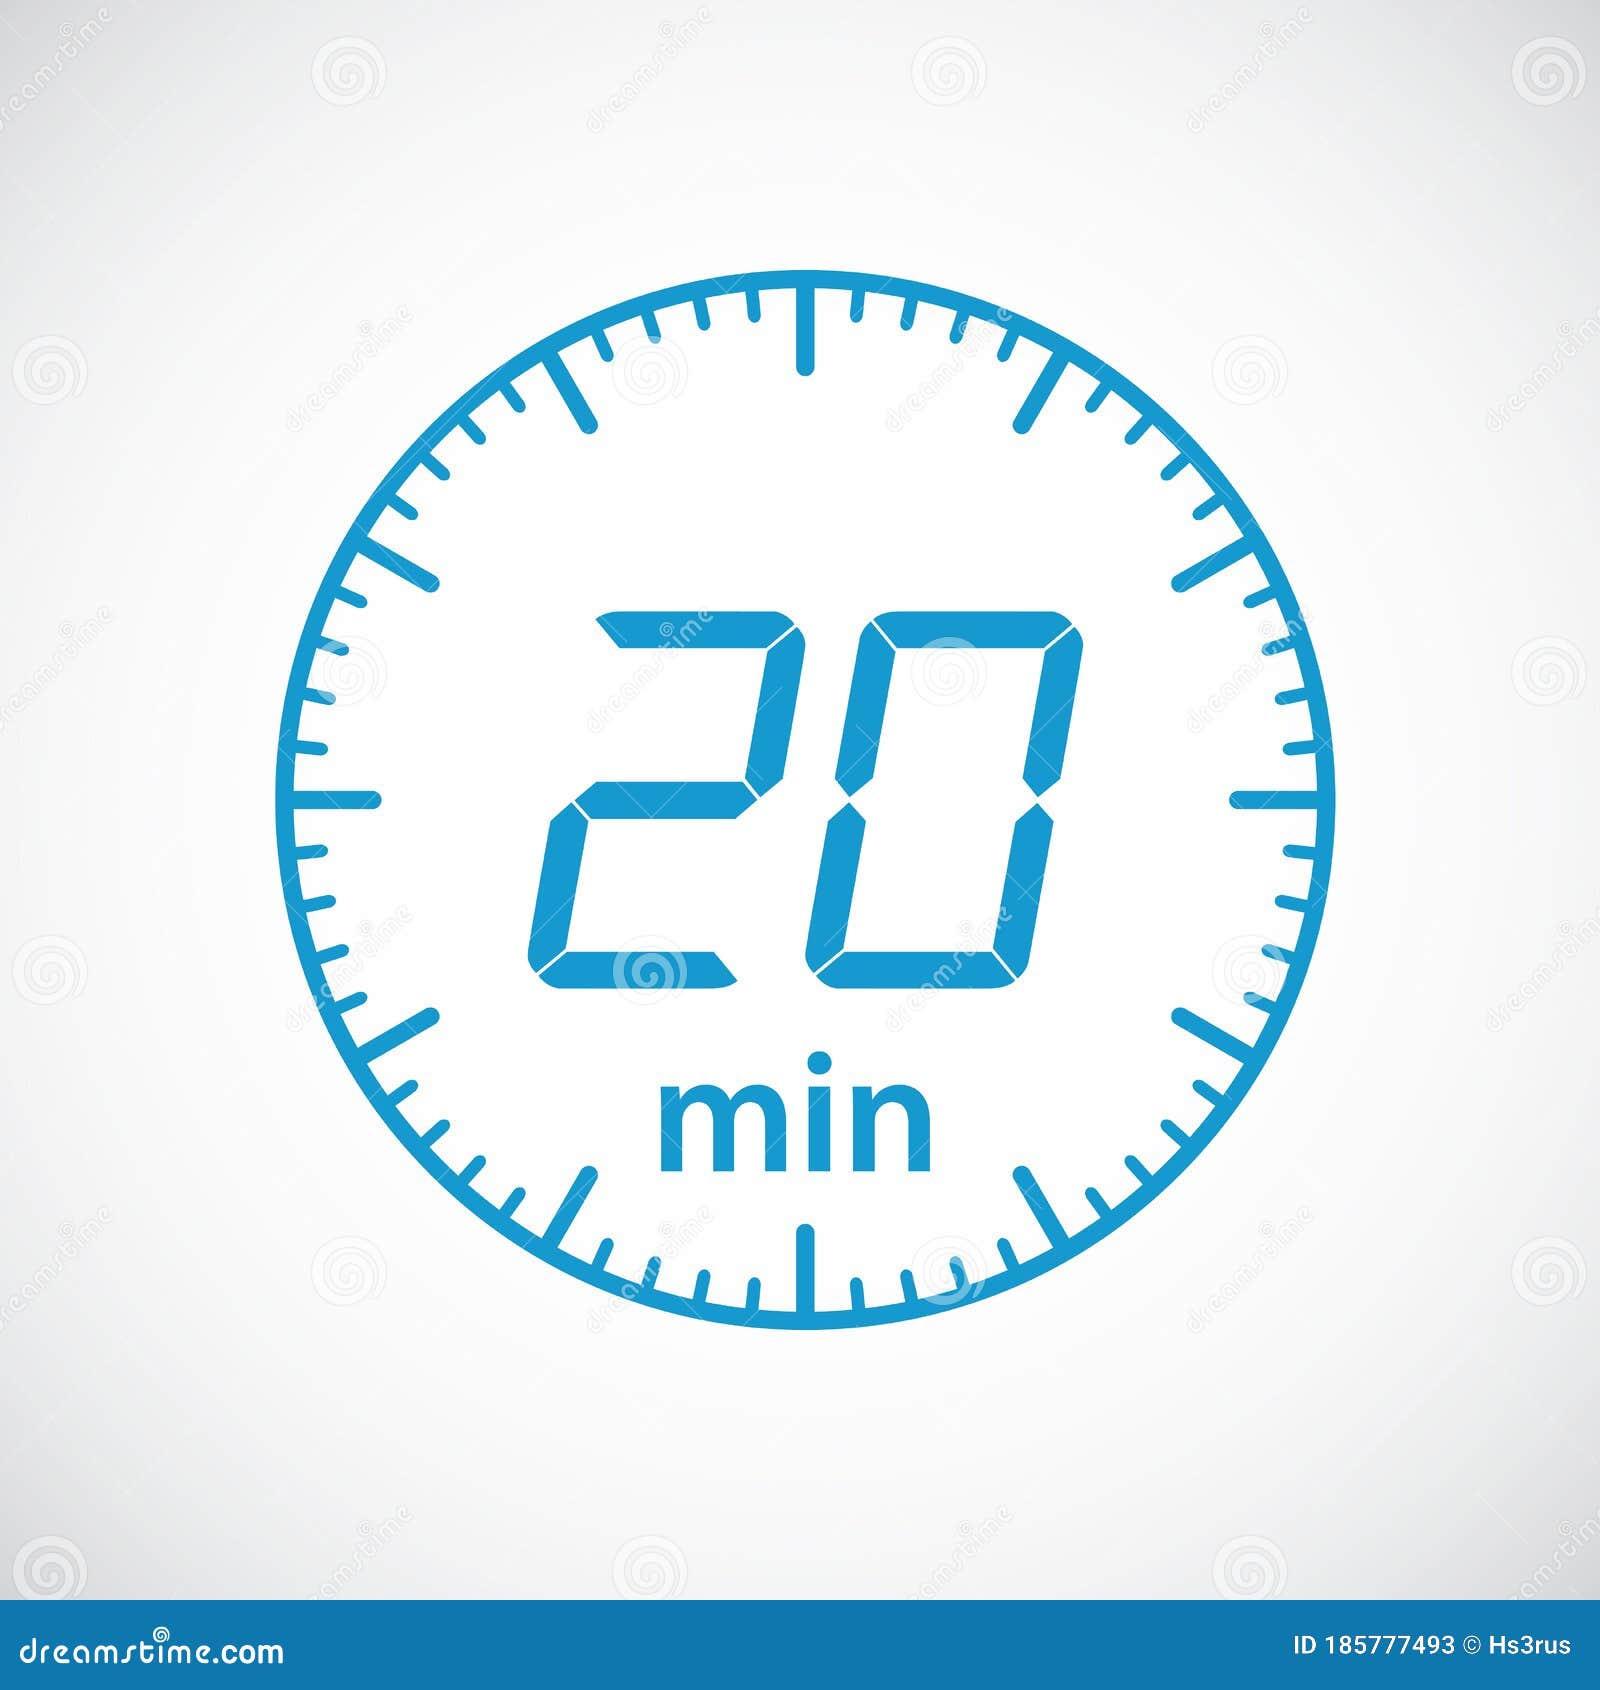 Temporizador 20 minutos - Temporizador online (timer)